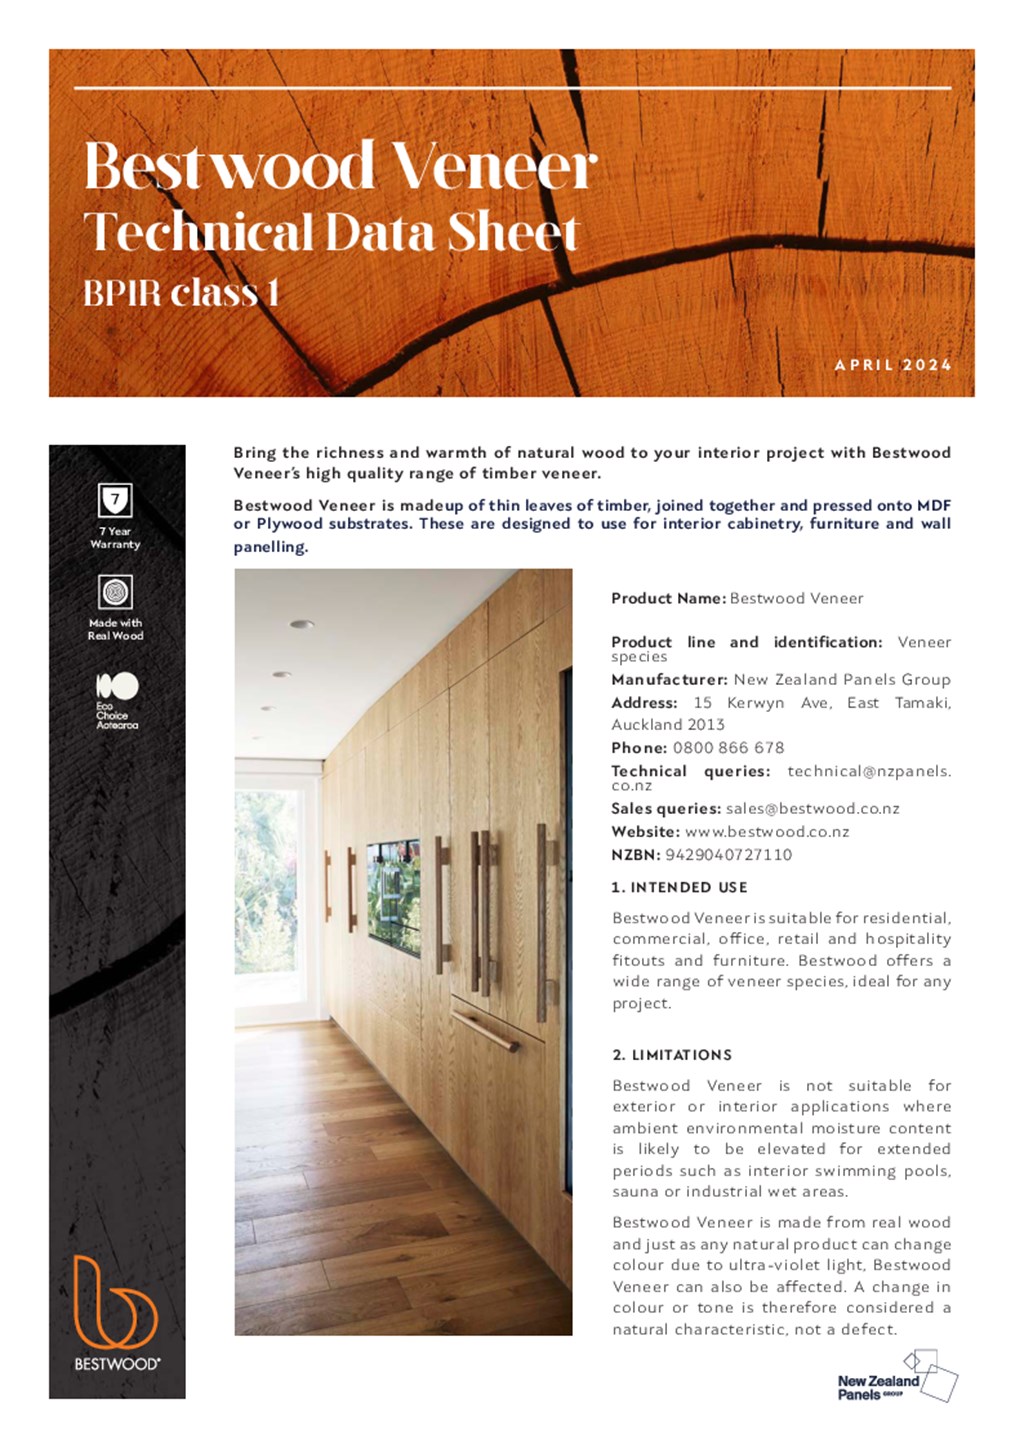 Bestwood Veneer Technical Data Sheet / BPIR